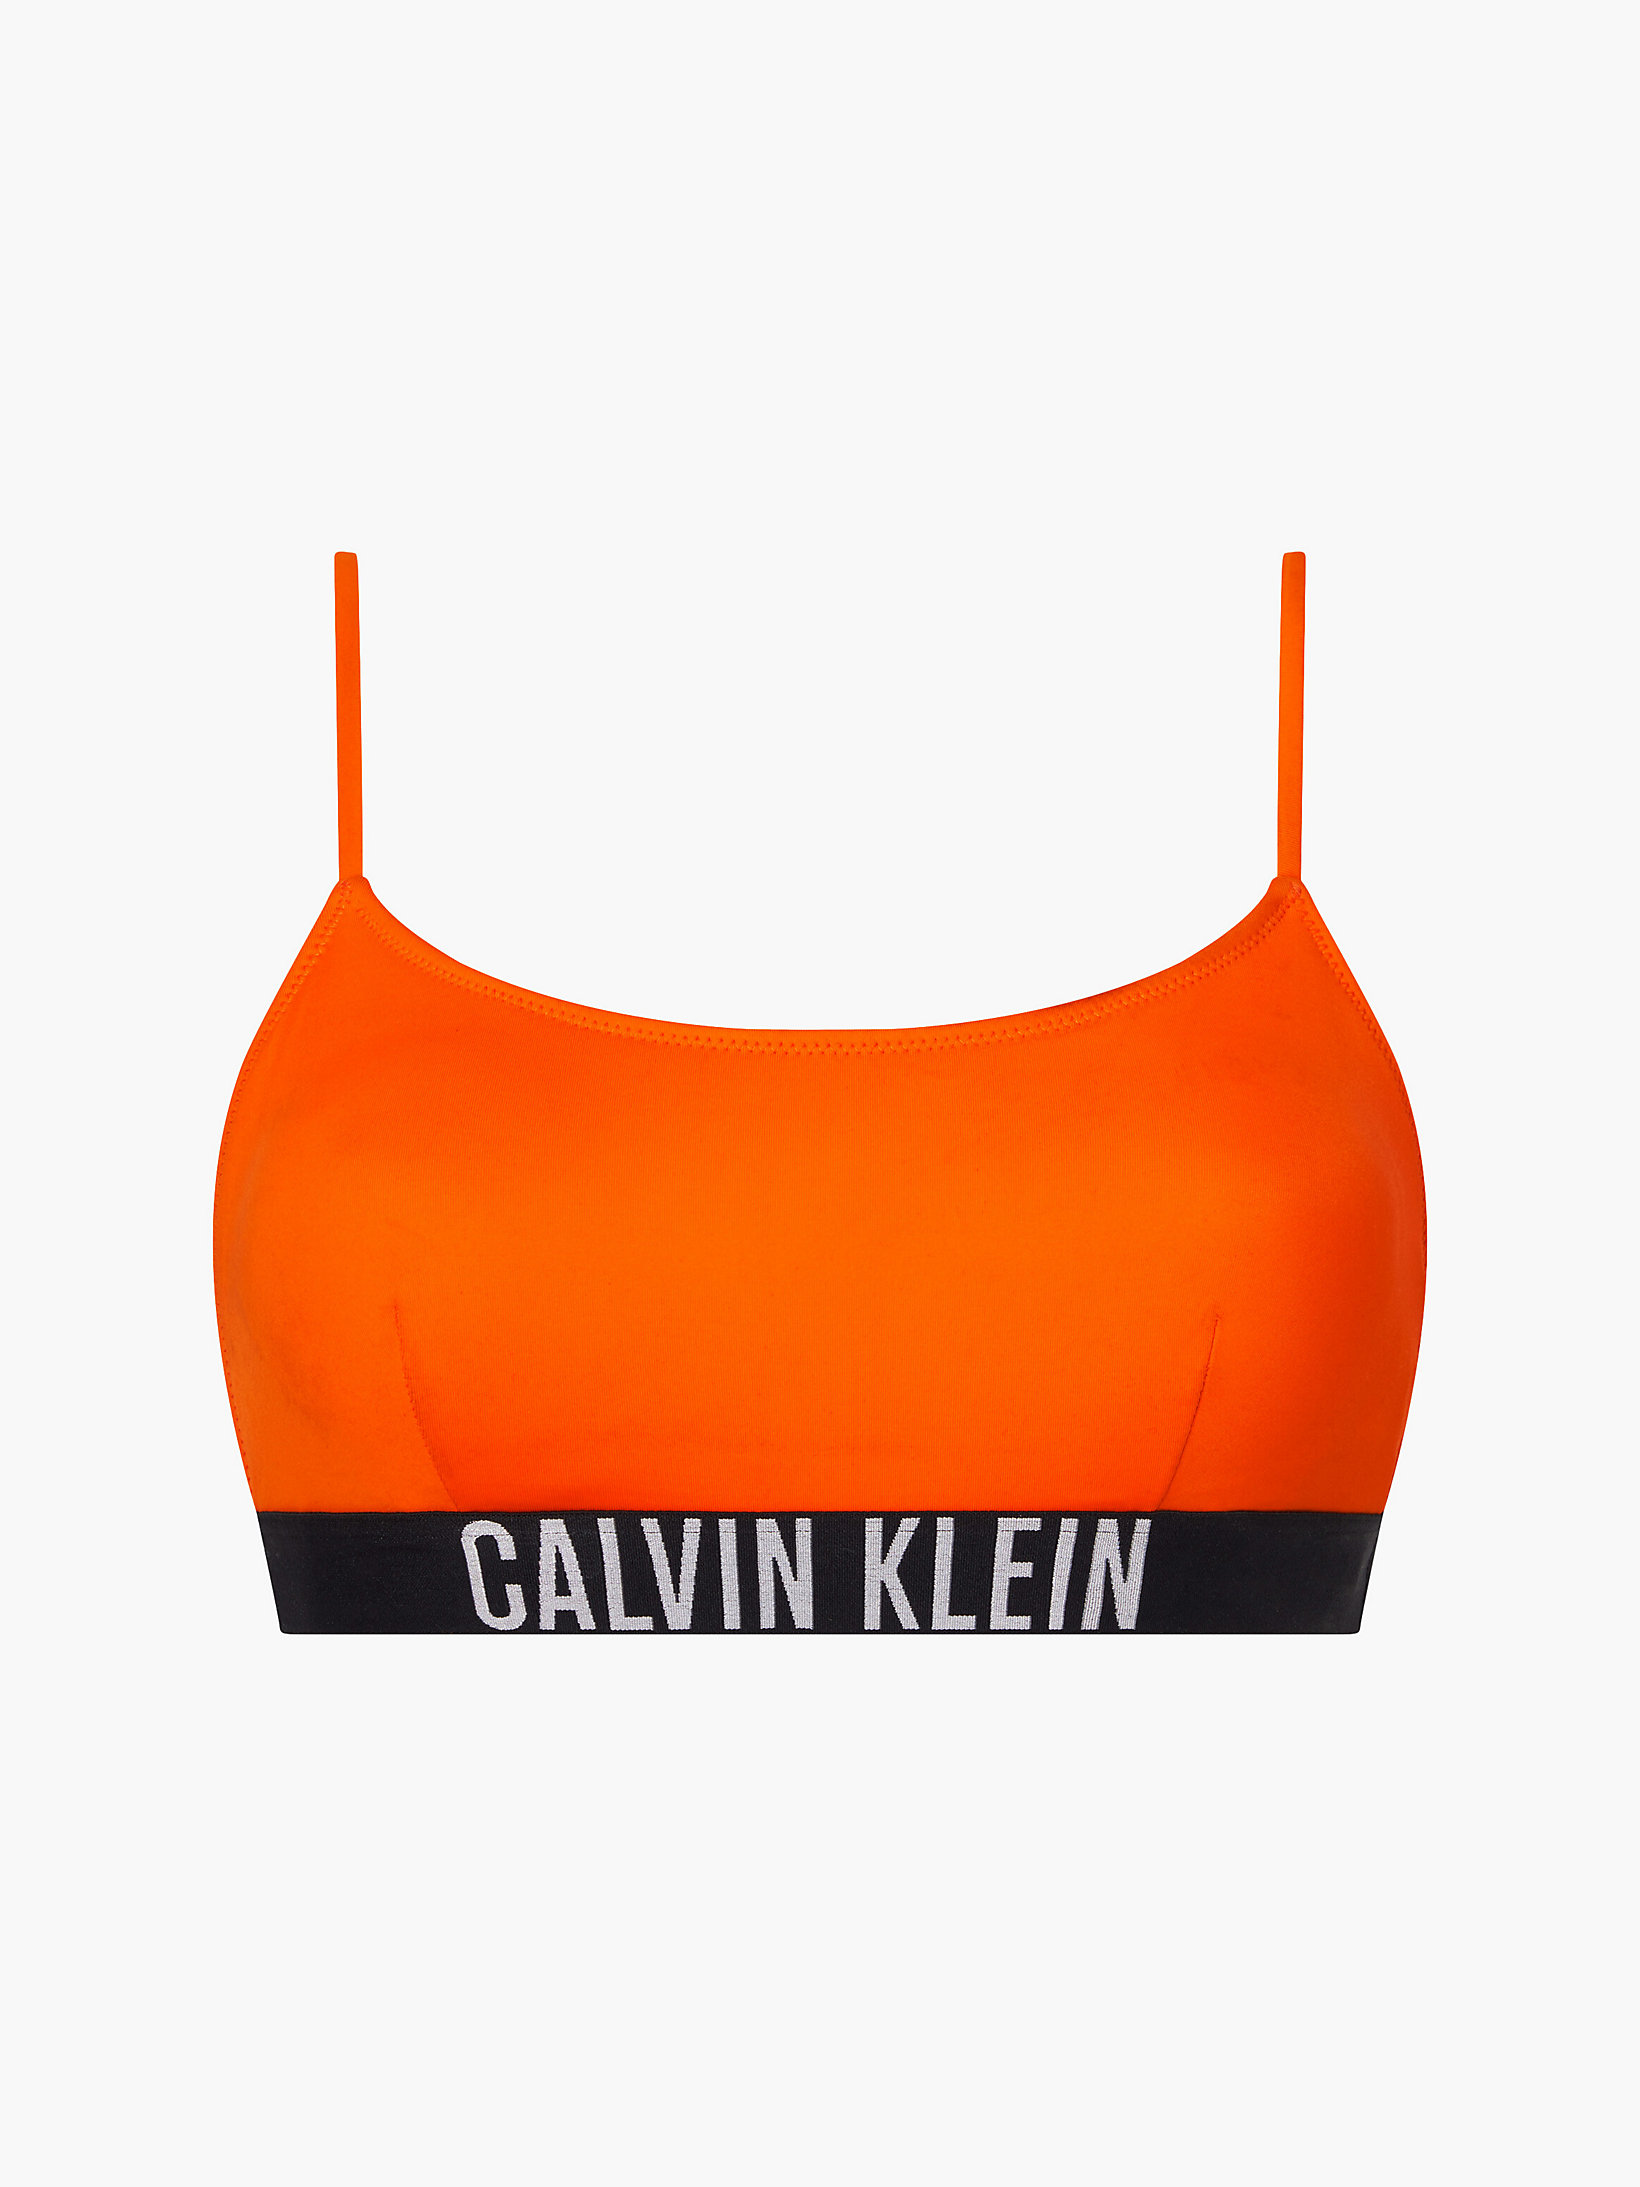 Vivid Orange Bralette Bikini Top - Intense Power undefined women Calvin Klein